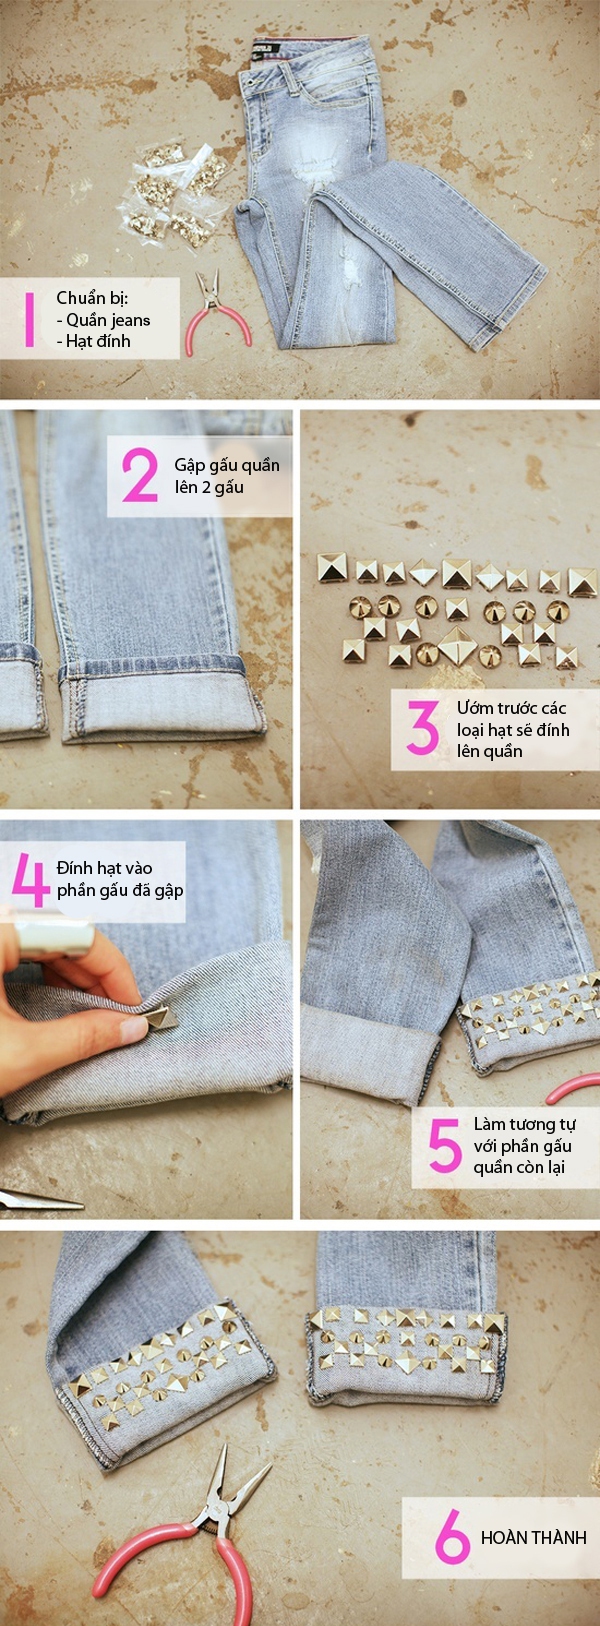 7 cách giản đơn biến hóa cho chiếc quần jeans cũ 1